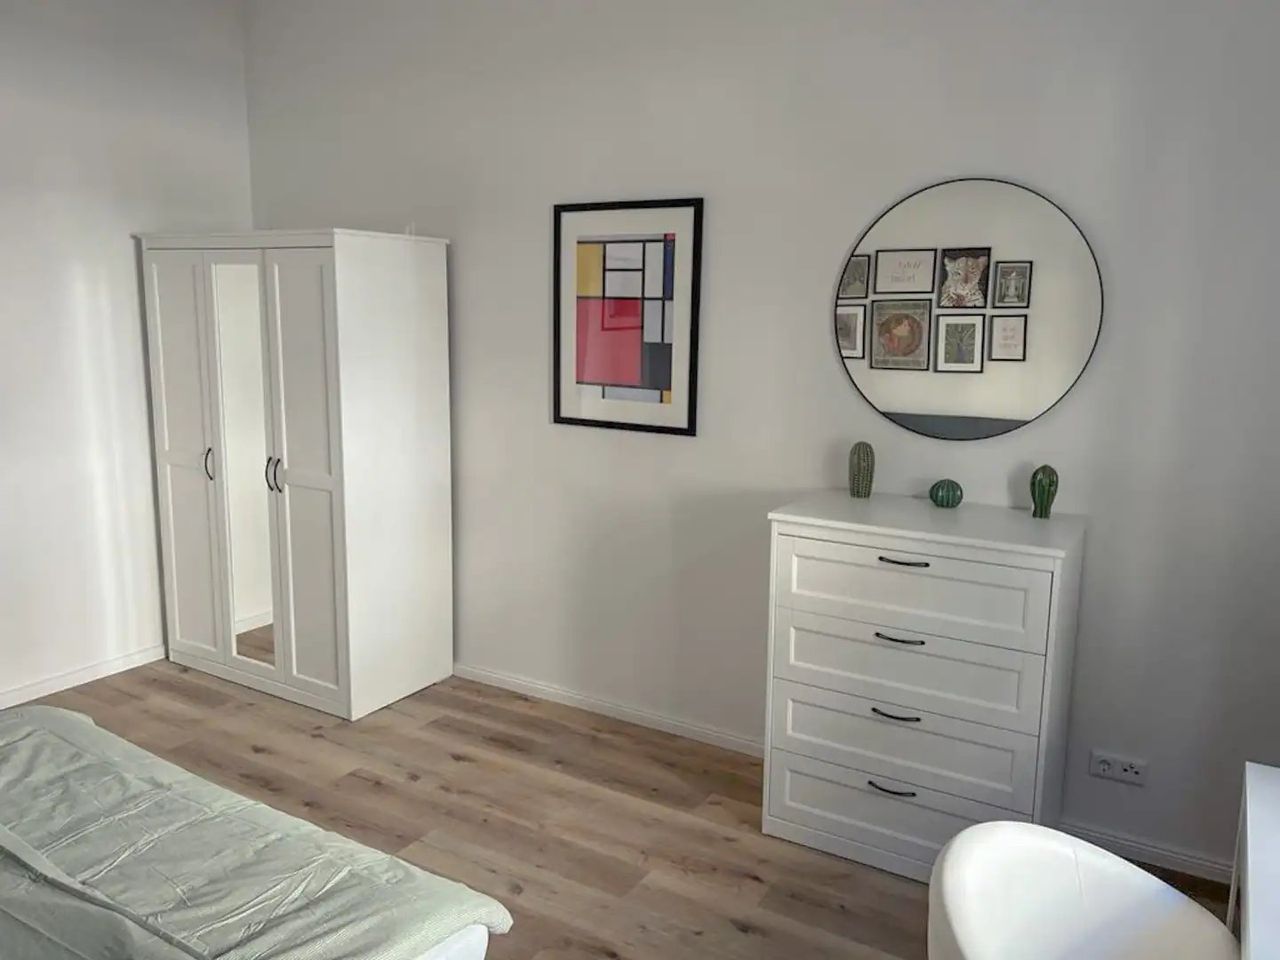 3 bedroom apartment in Berlin Kreuzberg